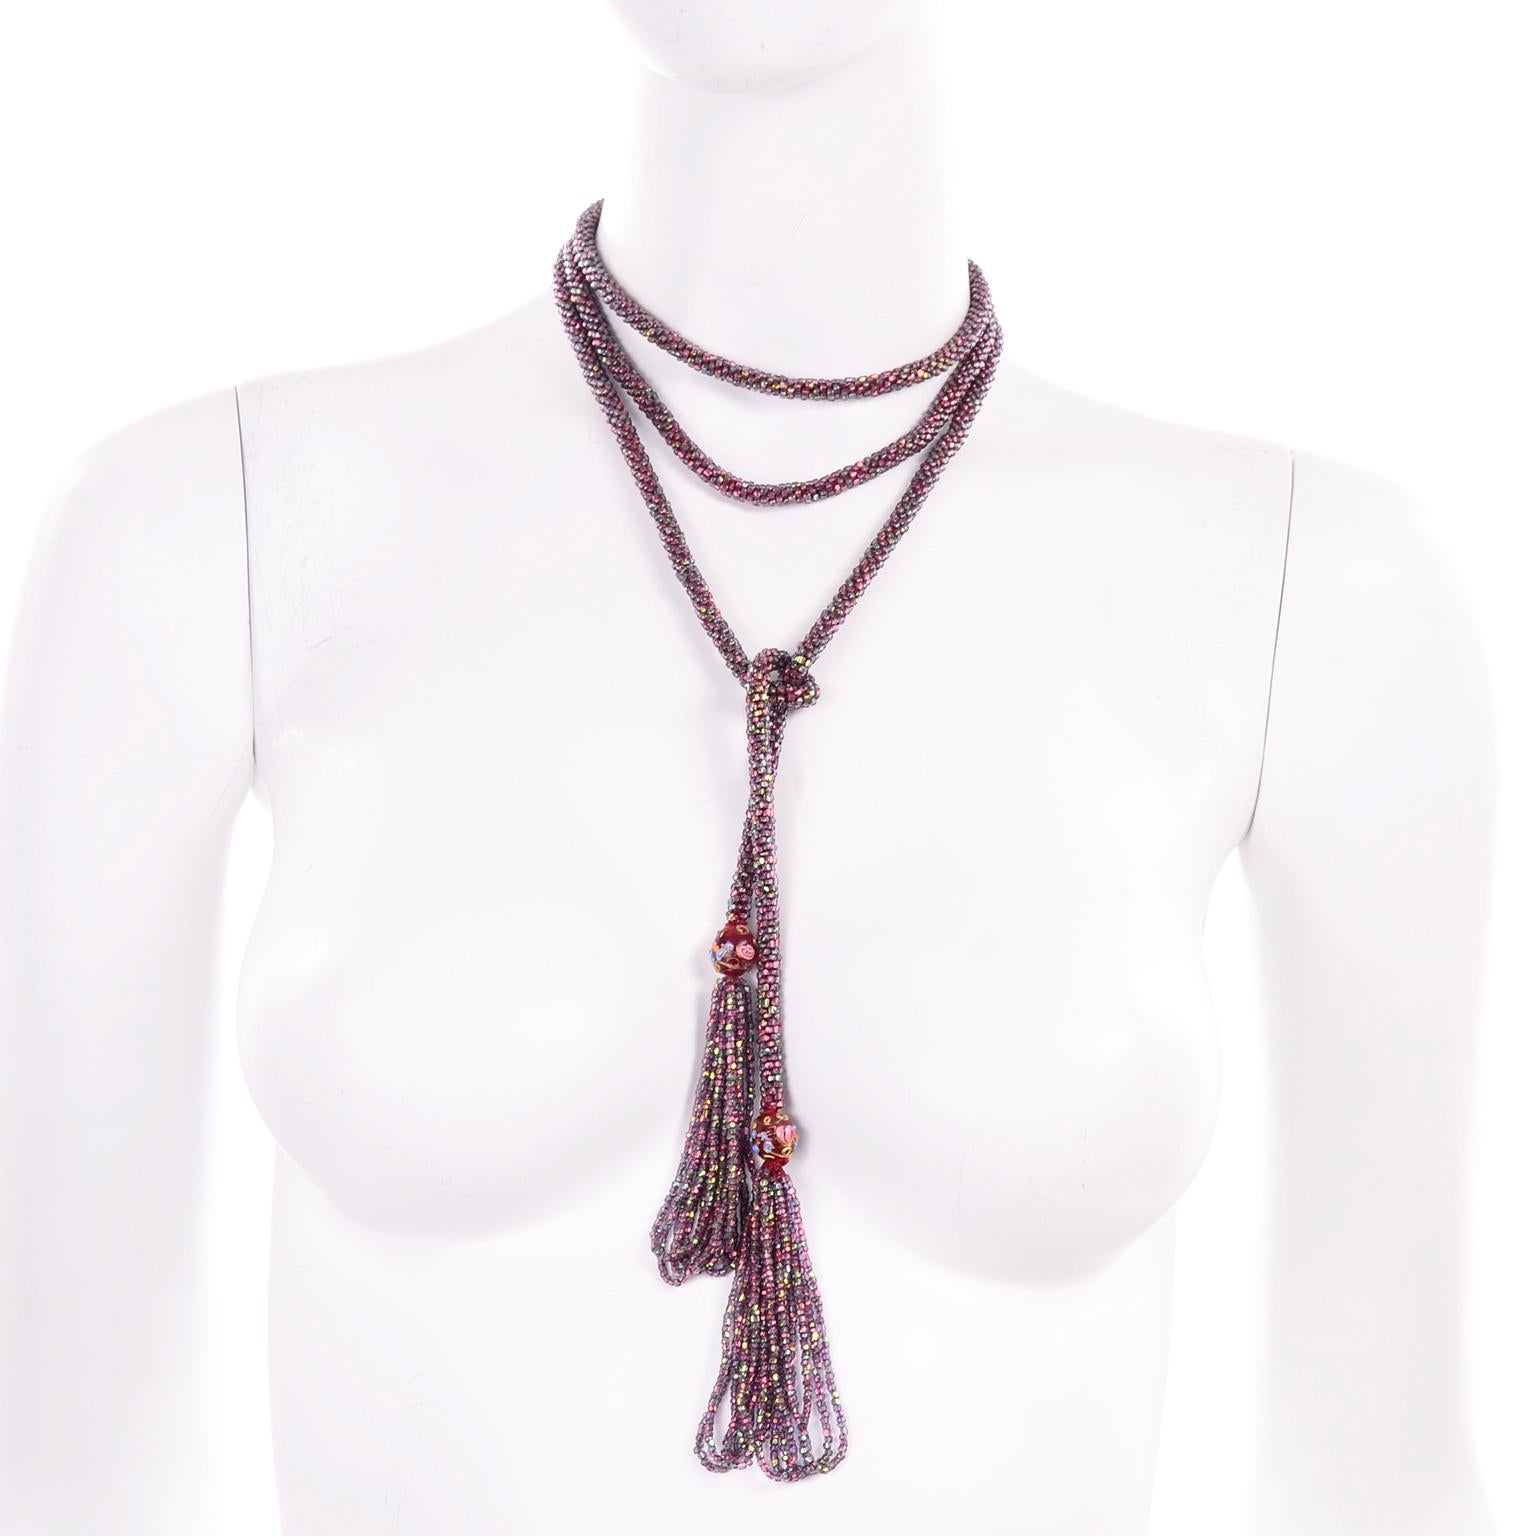 Dies ist eine schöne schillernde lila und rot Perlen Flapper Quaste Halskette mit Fransen und Akzent lampwork oder Hochzeitstorte Perlen. Die Sautoir Seil Stil Halskette misst 60 